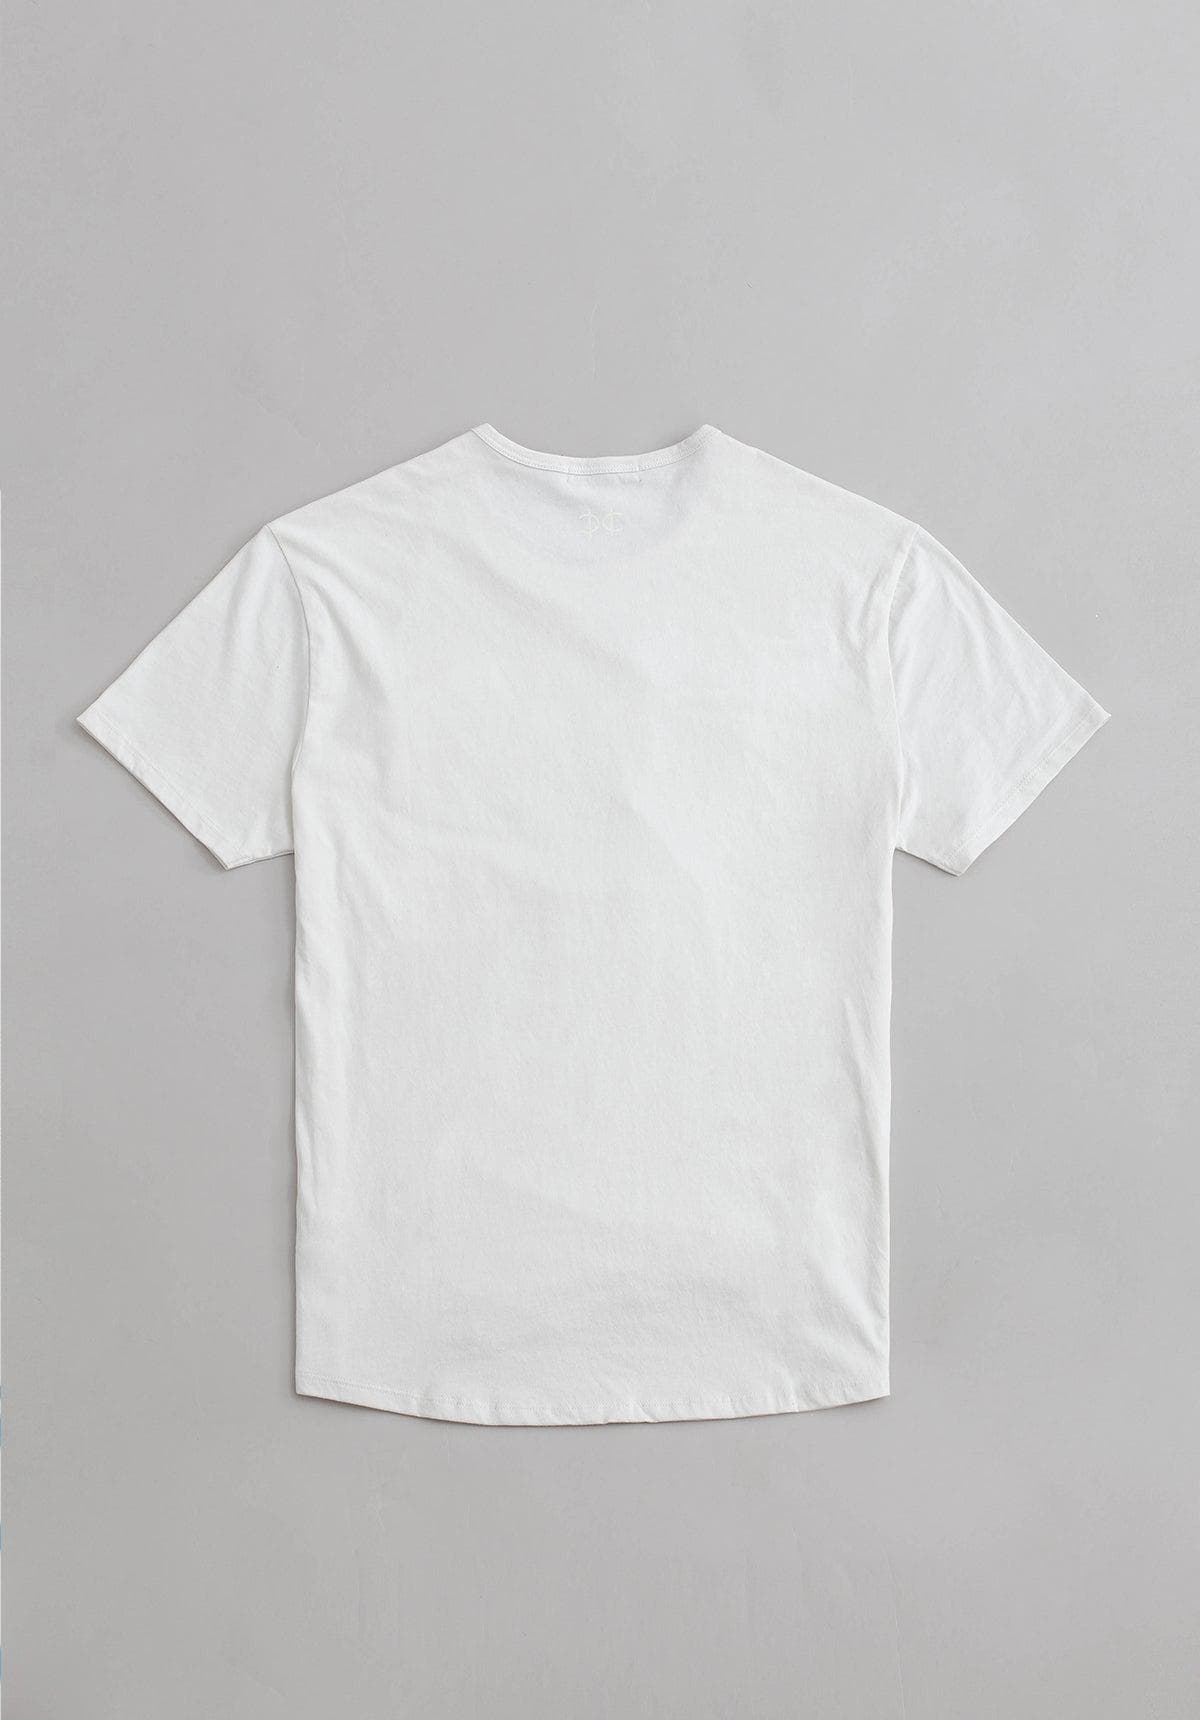 T shirt - White